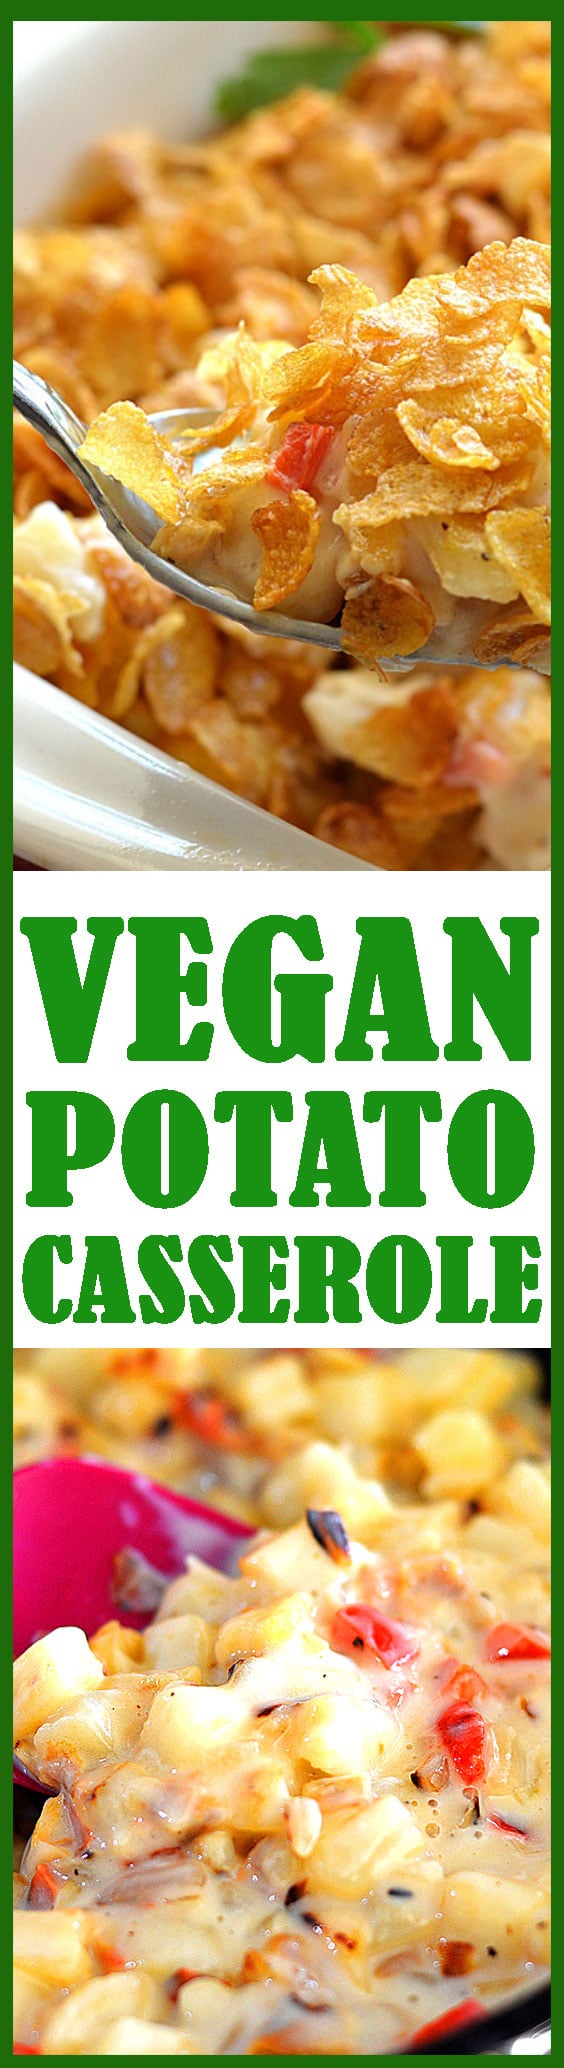 Vegan Potato Casserole